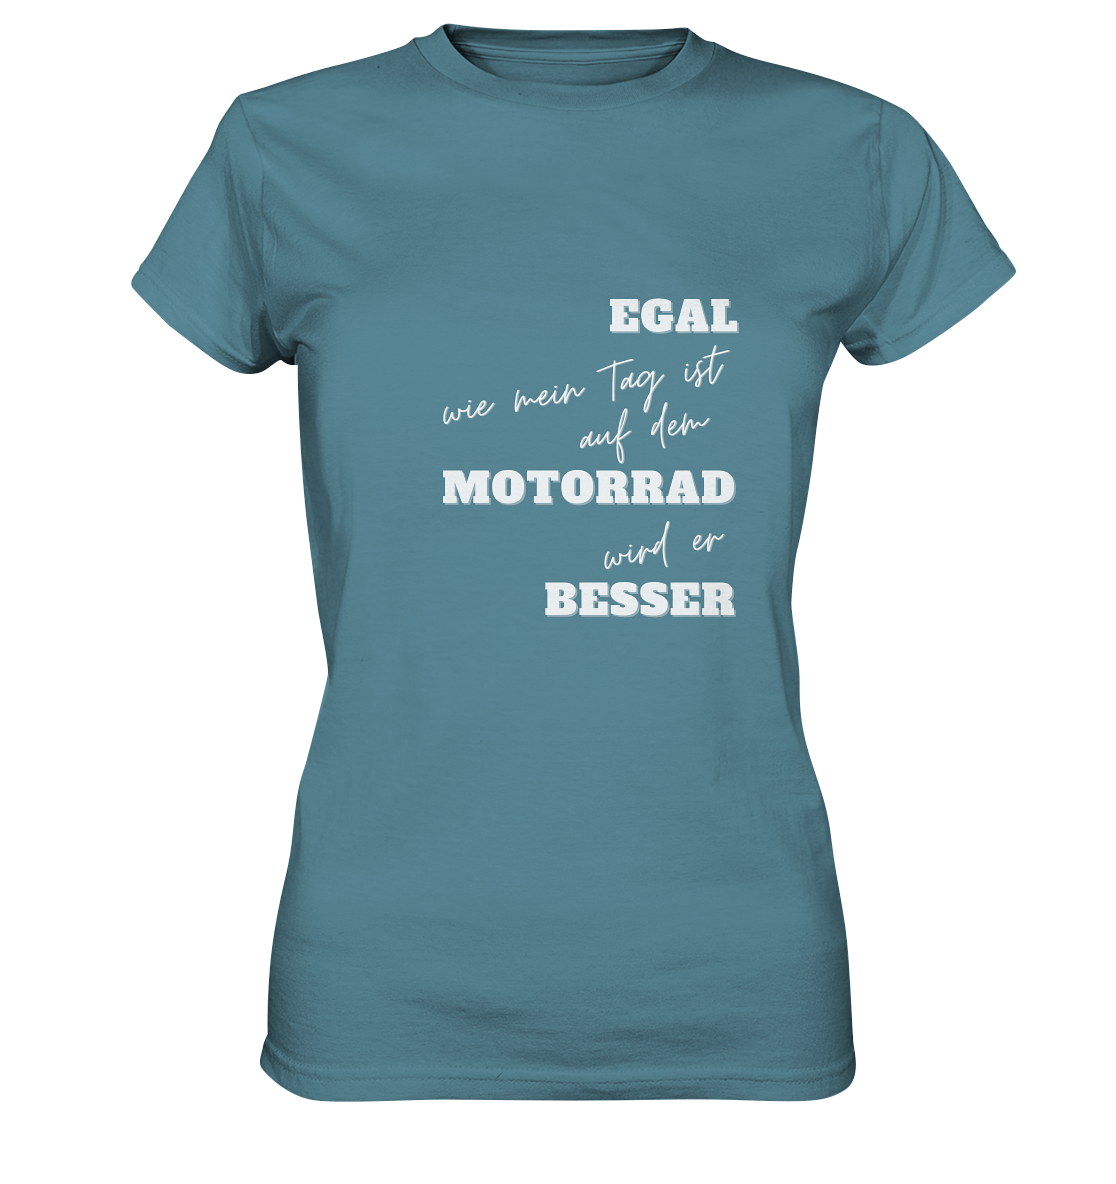 Damen Premium Motorrad-T-Shirt mit weißem Aufdruck: "Egal, wie mein Tag ist, auf dem Motorrad wird er besser" | hell blau